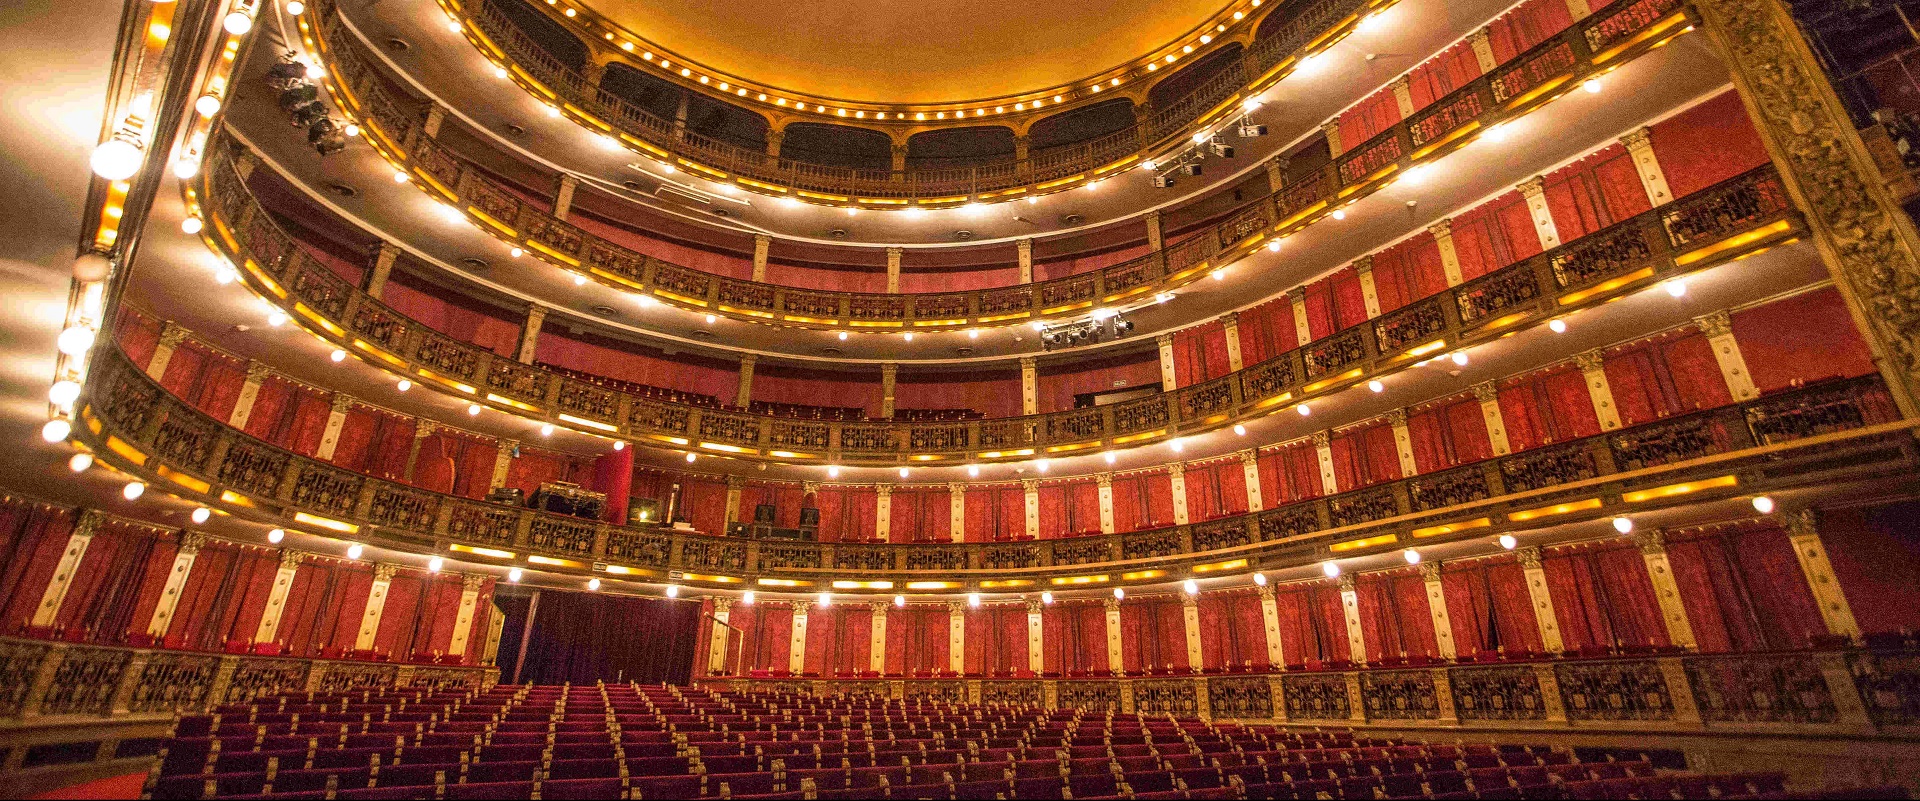 El Teatro Nacional Cervantes celebra su centenario con una programación especial